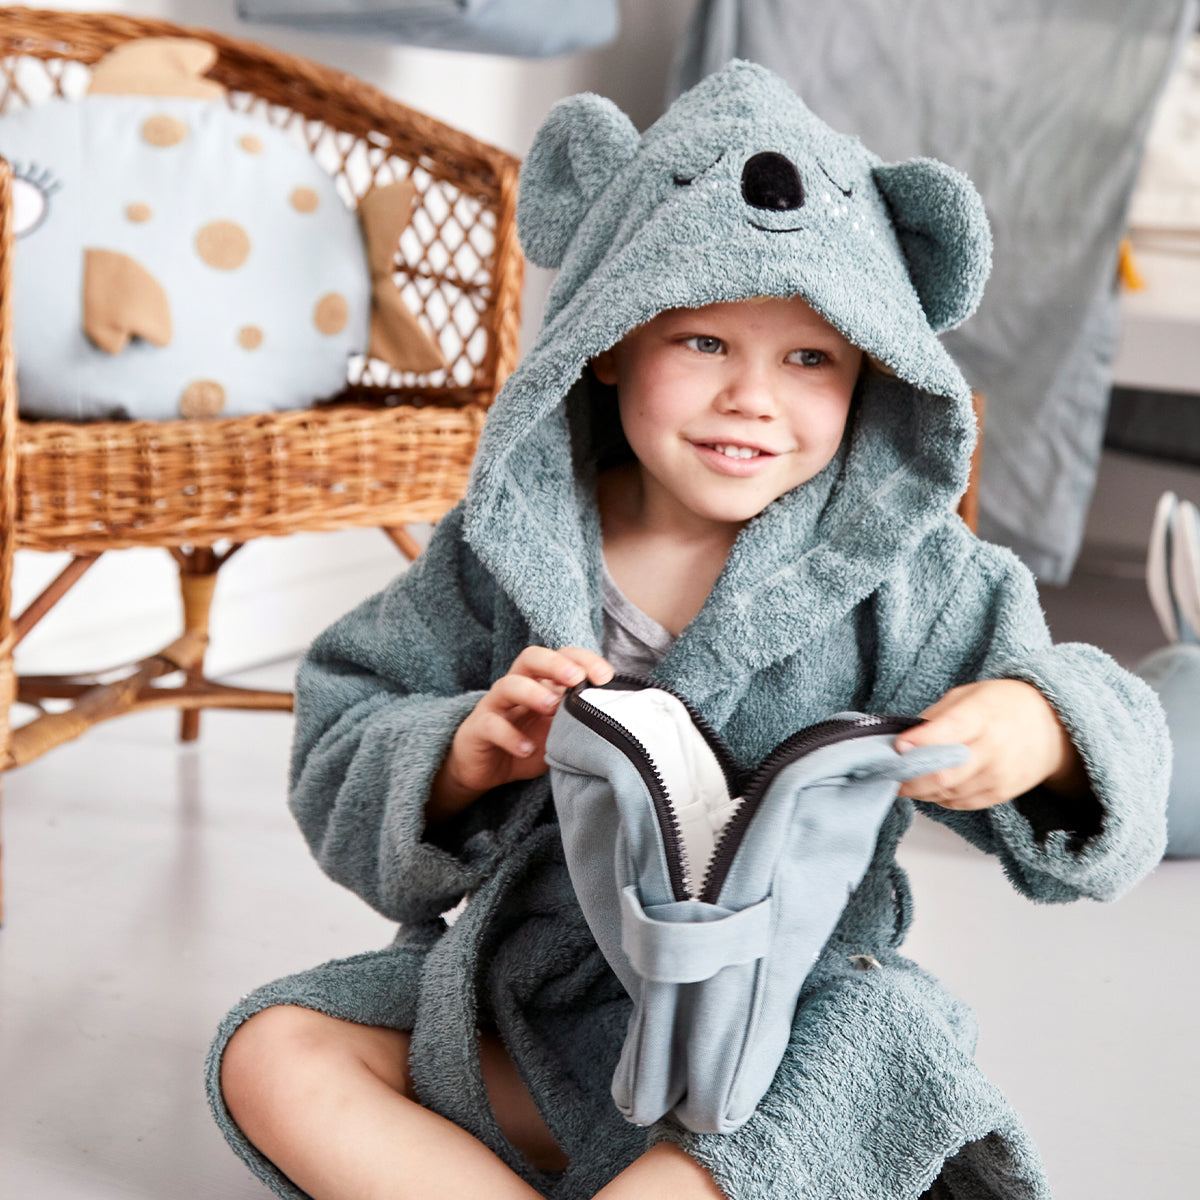 De schattige blauw/grijze badjas koala van Roommate met geborduurd gezichtje en oortjes is ideaal om jouw kindje warm te houden. Ook is de babybadjas zacht voor het gevoelige babyhuidje. VanZus